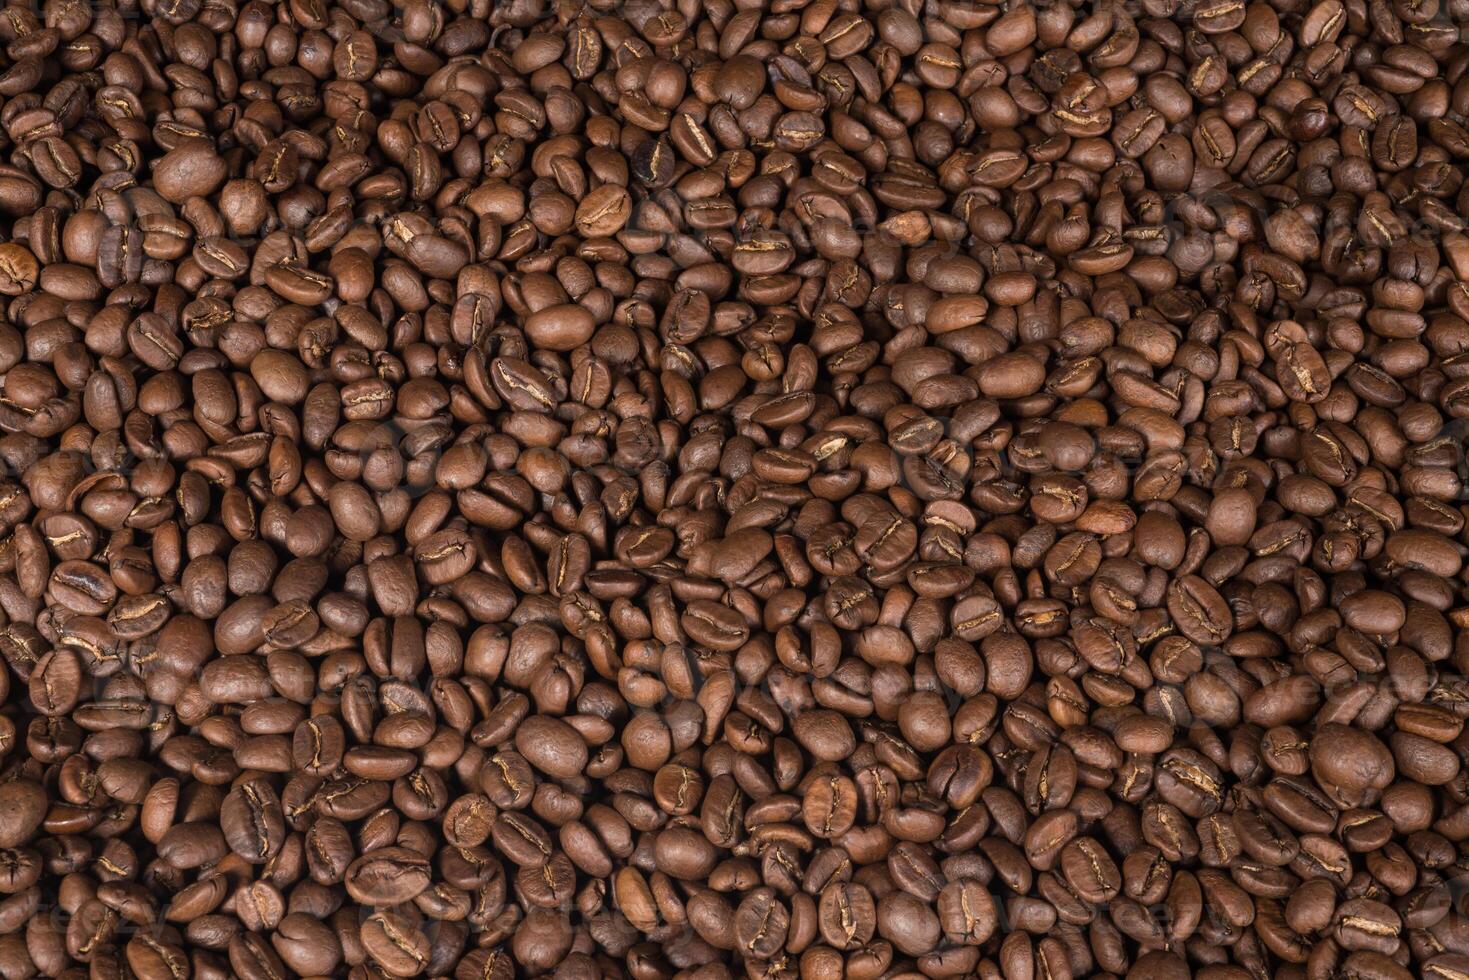 bundel van koffie granen van Mexico foto